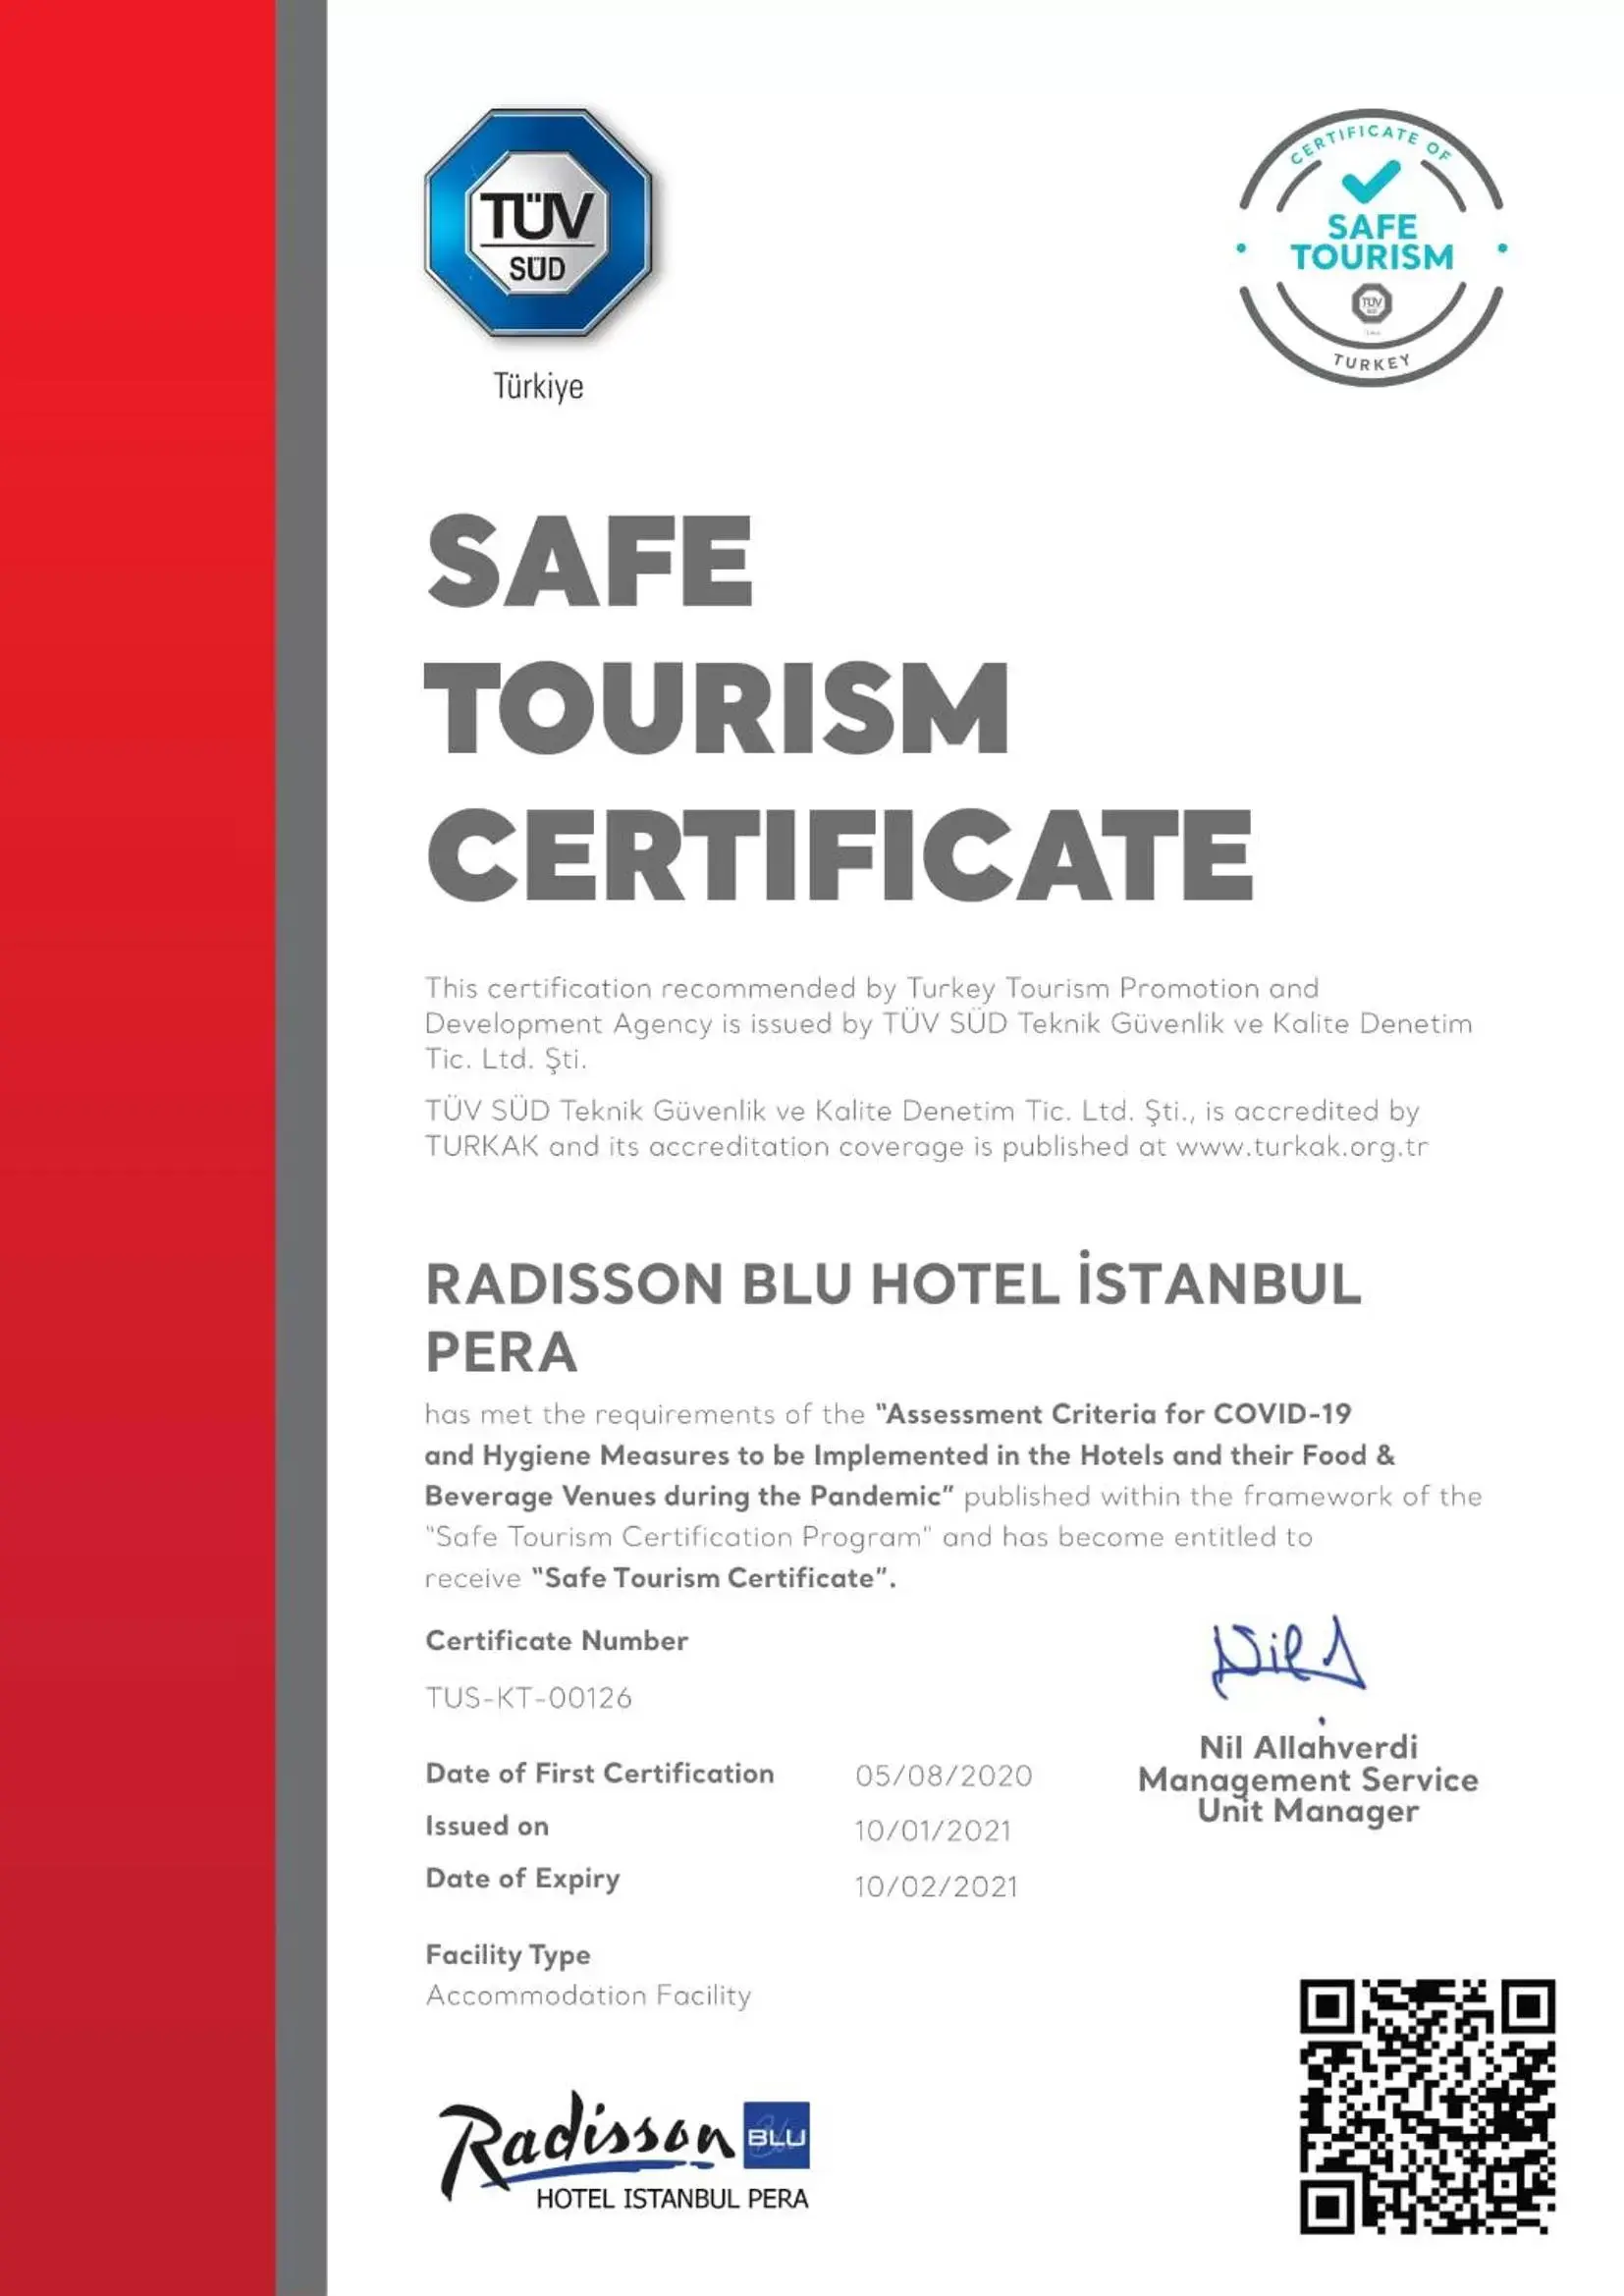 Logo/Certificate/Sign in Radisson Blu Hotel Istanbul Pera